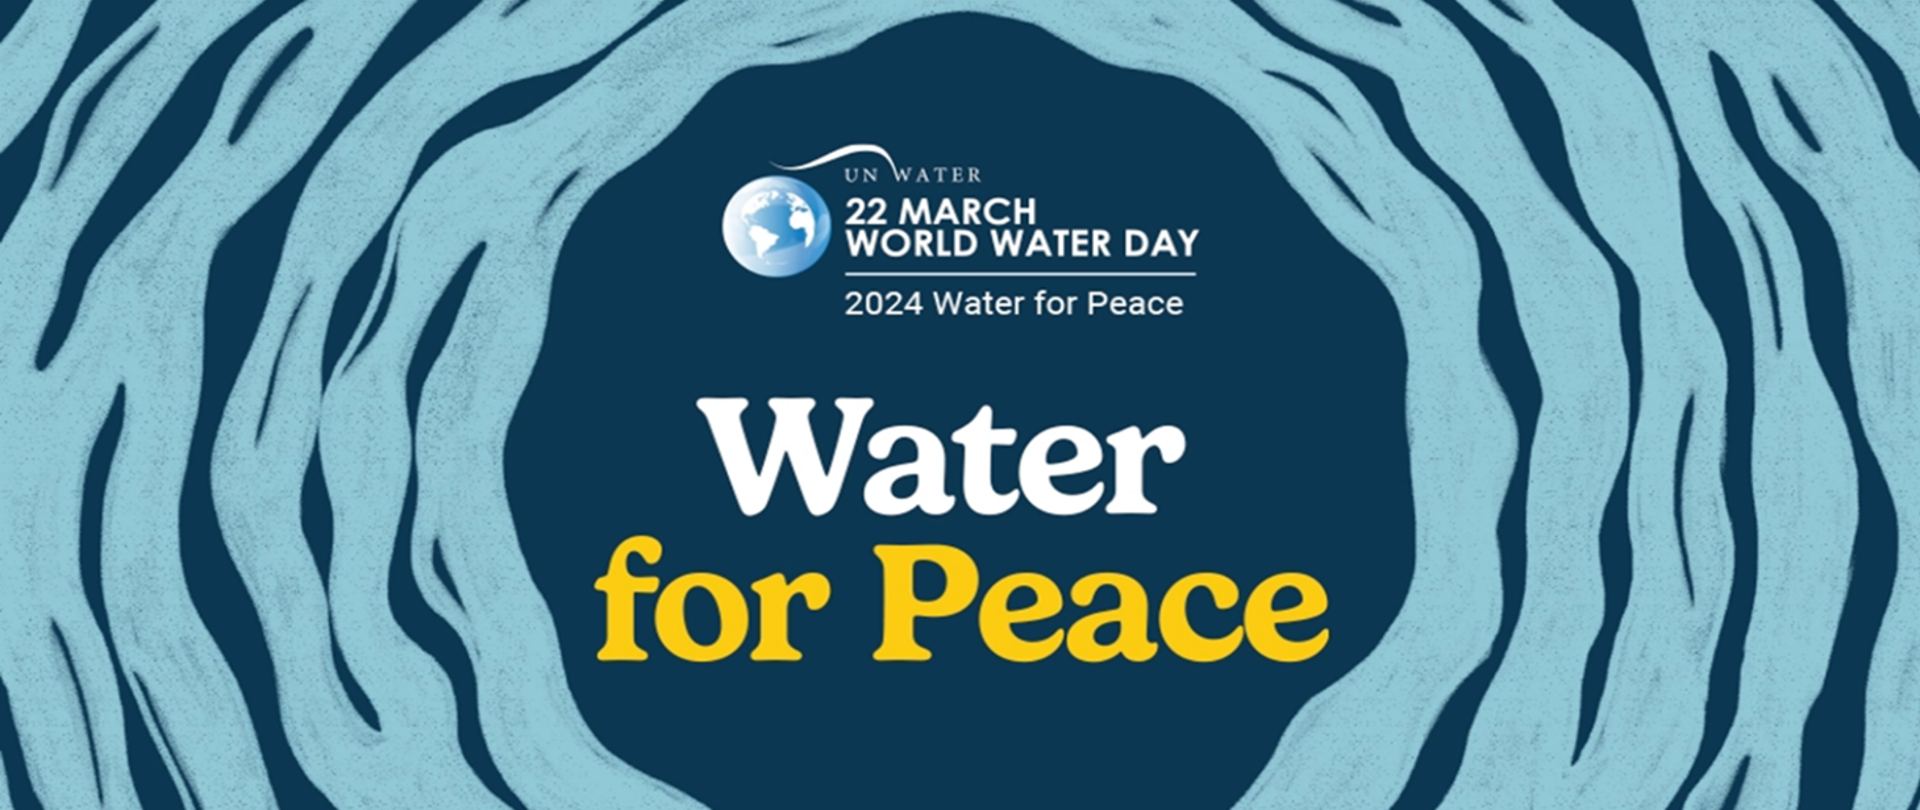  Światowy Dzień Wody 22 marca 2024